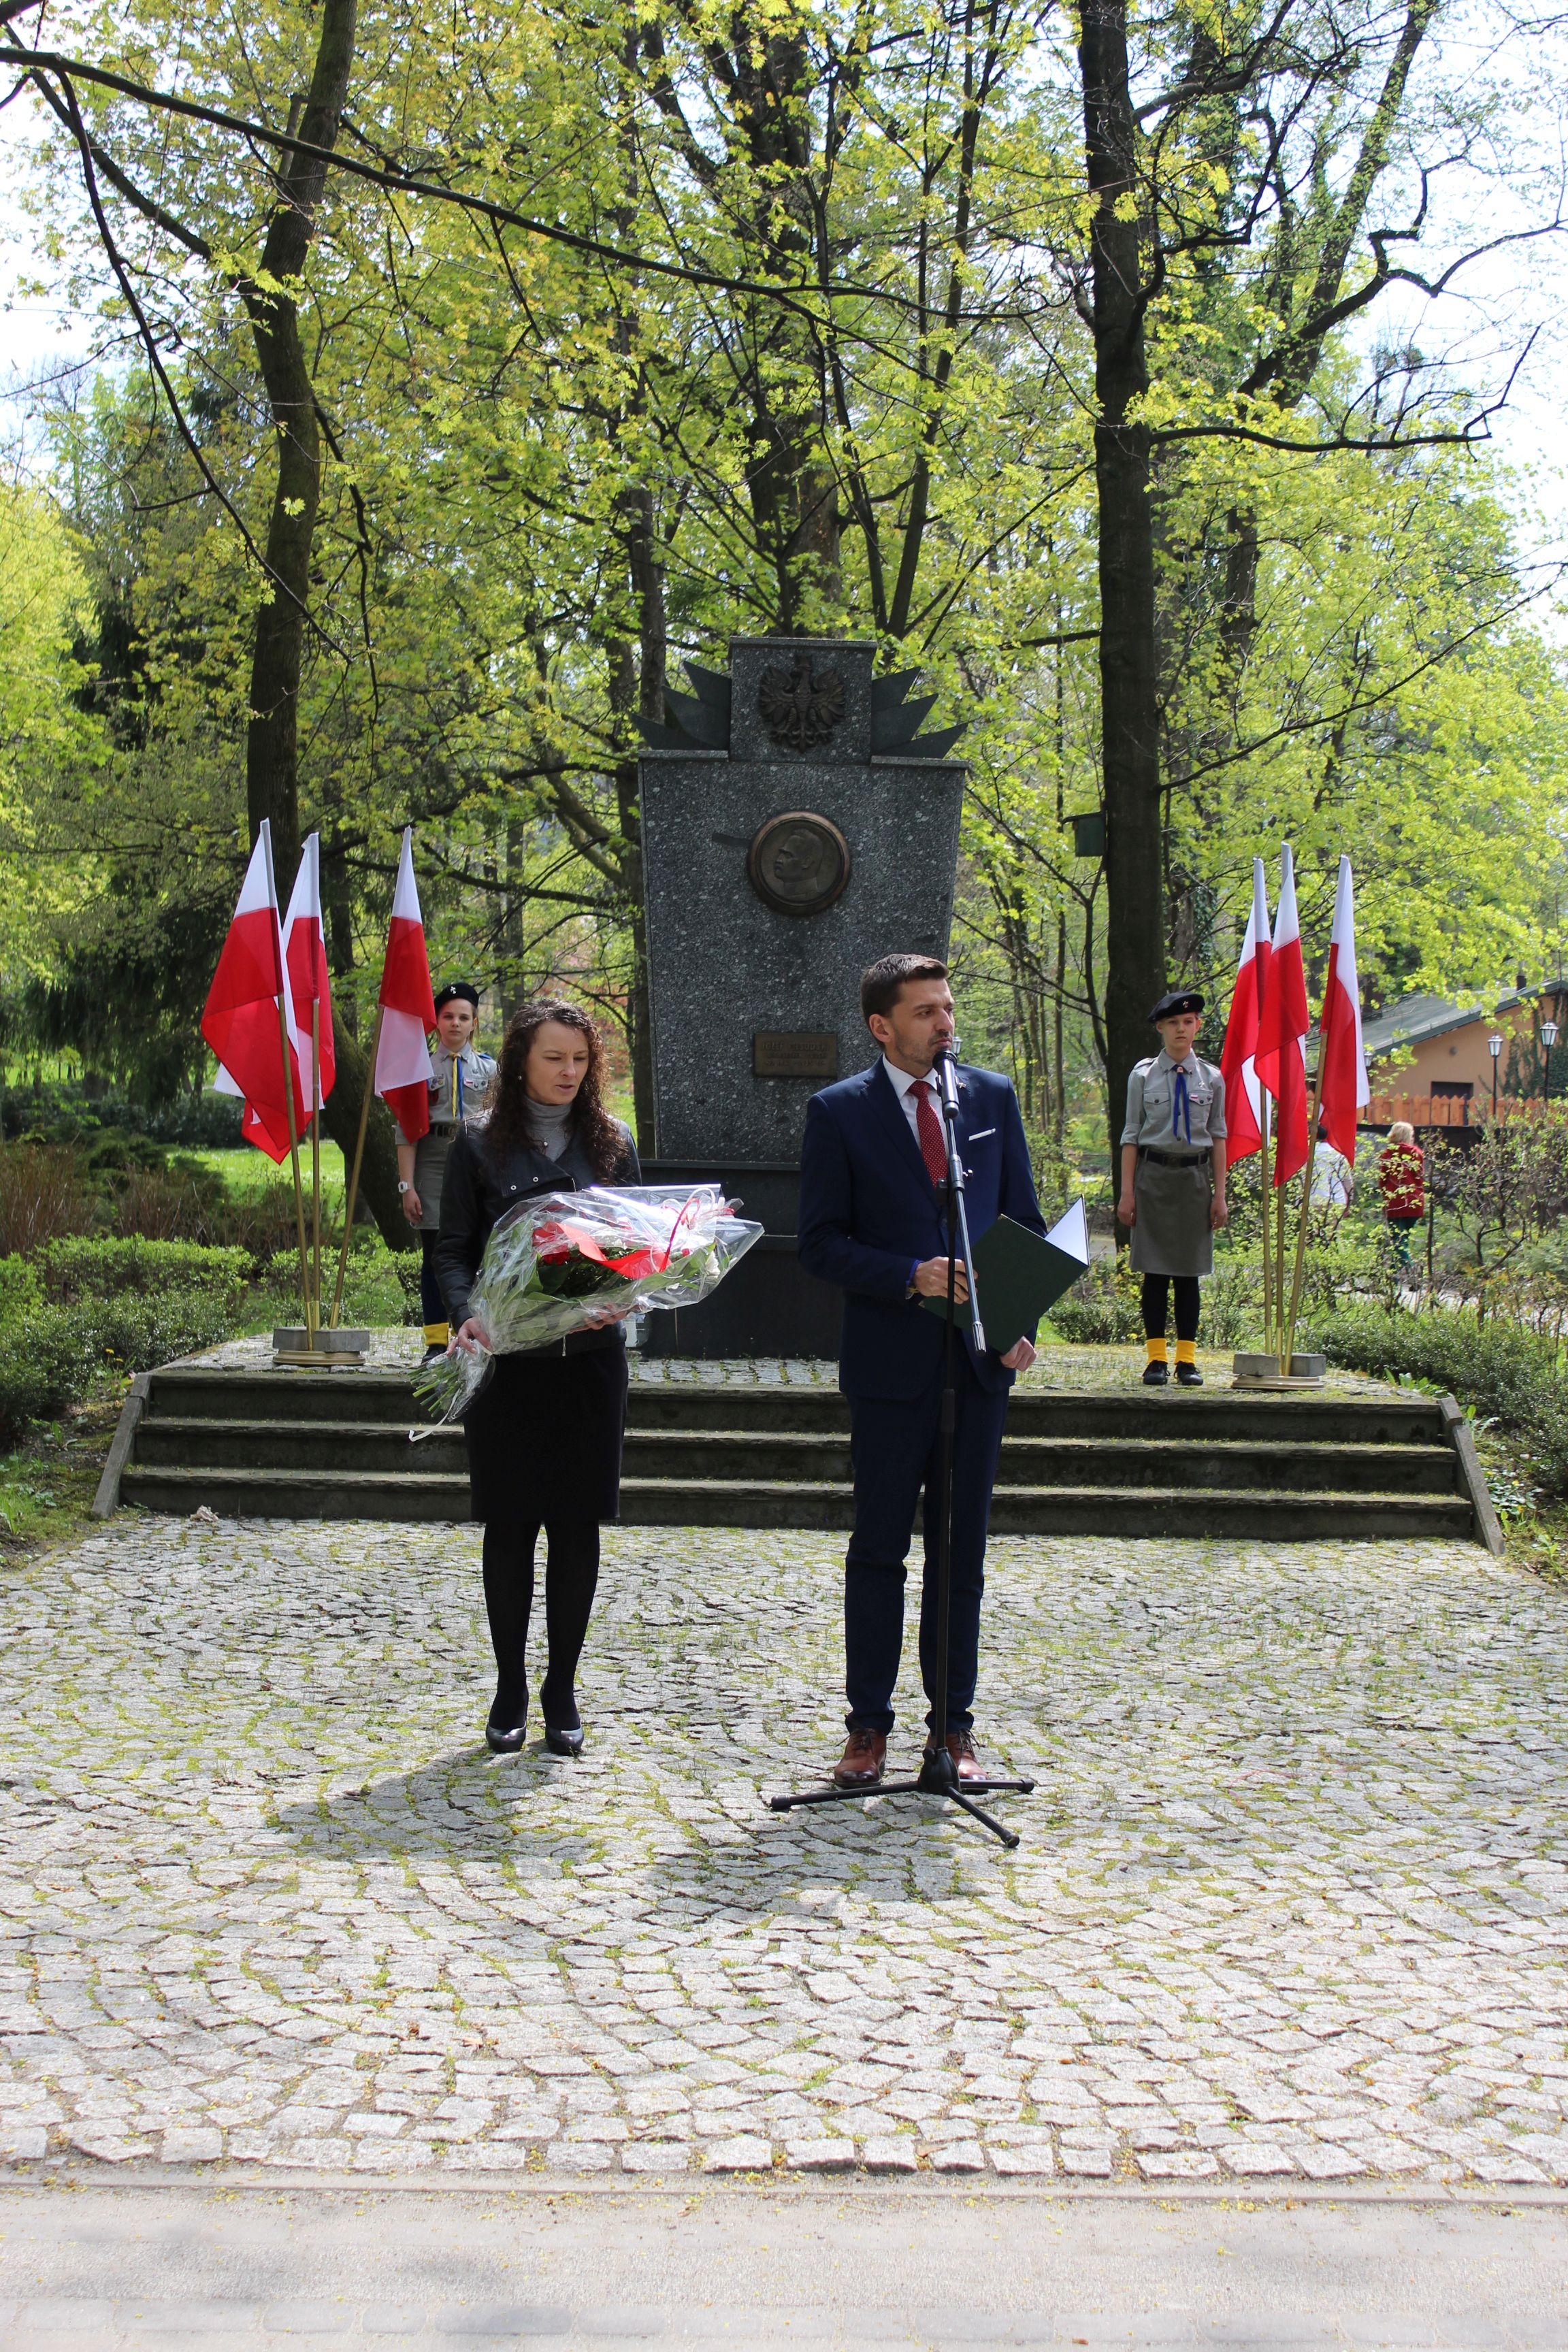 Wójt i Zastępca Wójta stojący przed pomnikiem, z tyłu dwoje harcerzy. Obok nich flagi Polski.